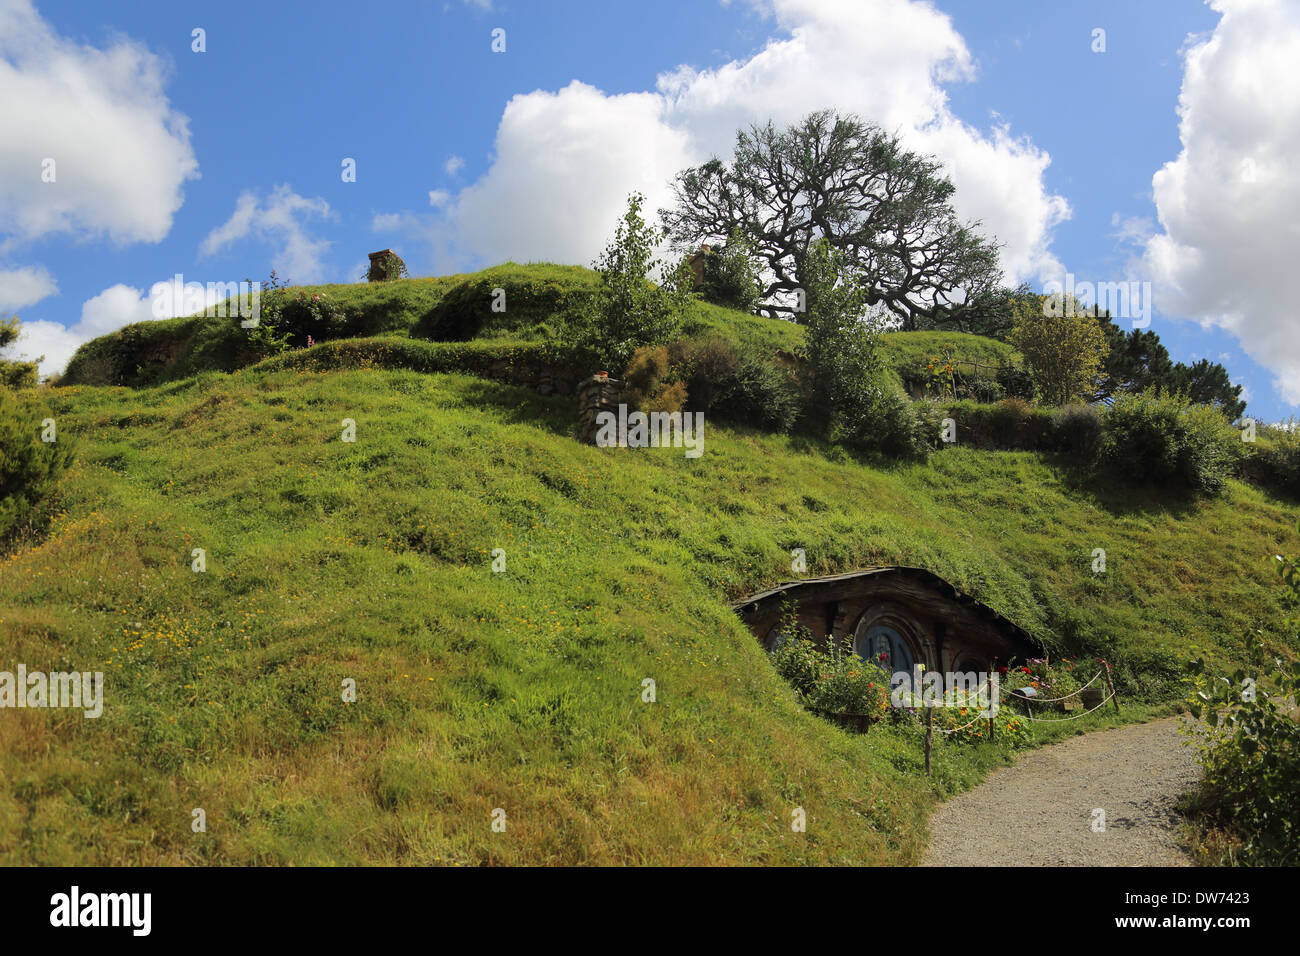 L'ensemble du film Hobbit Hobbit ,trou,Hobbiton, Broadway, Matamata, près de Cambridge, de la région de Waikato, Nouvelle-Zélande, île du Nord Banque D'Images